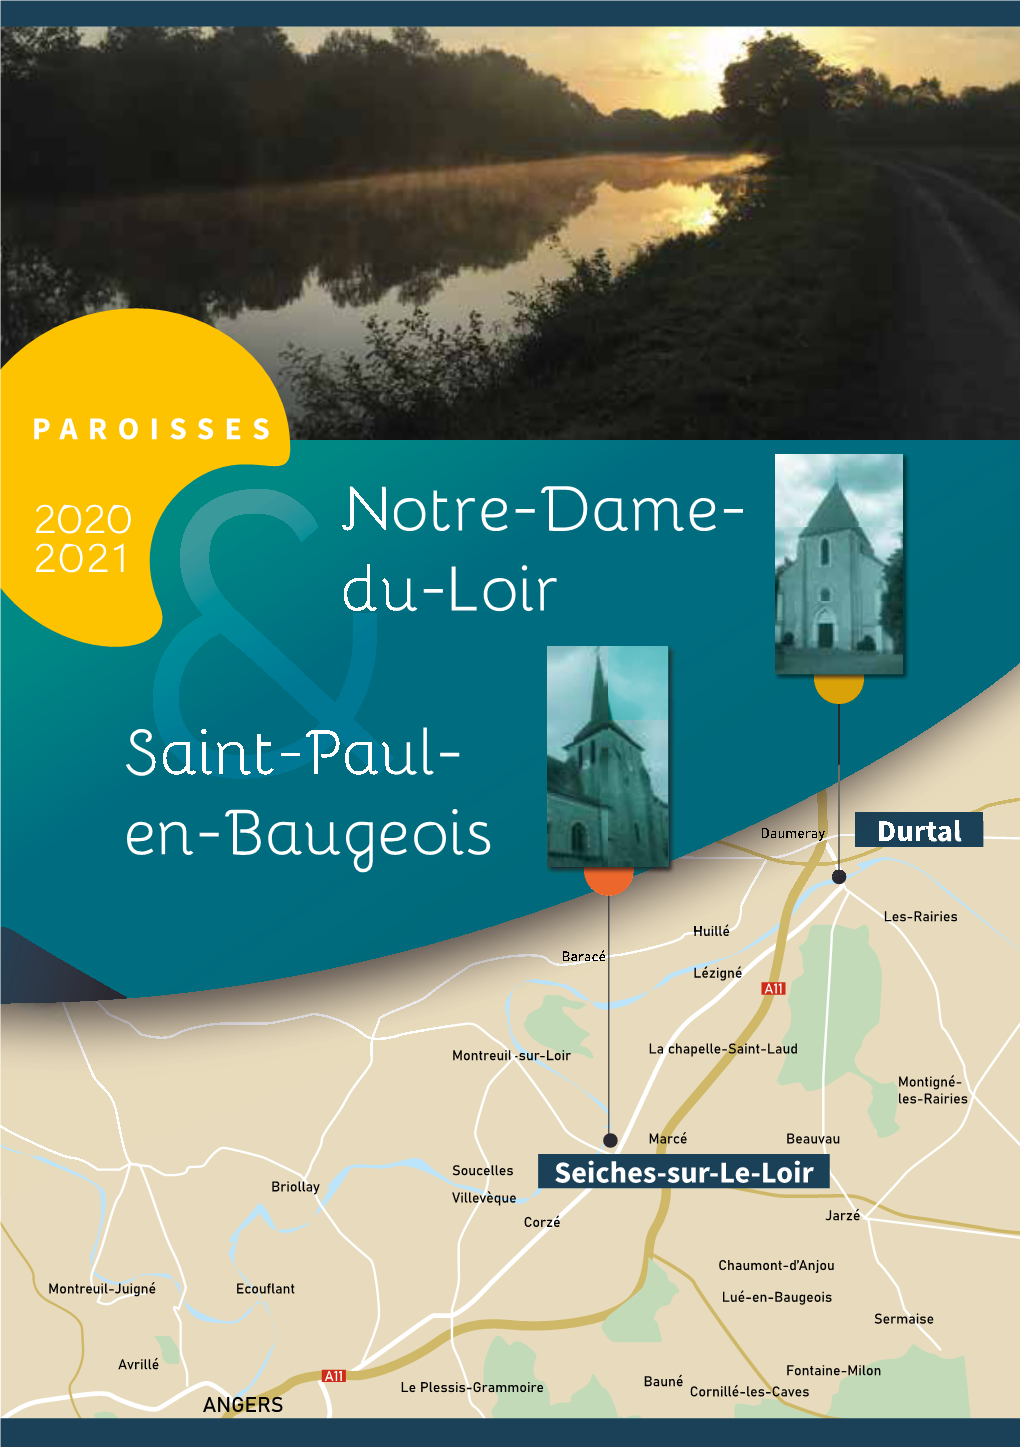 En-Baugeois &Notre-Dame- Du-Loir &Saint-Paul